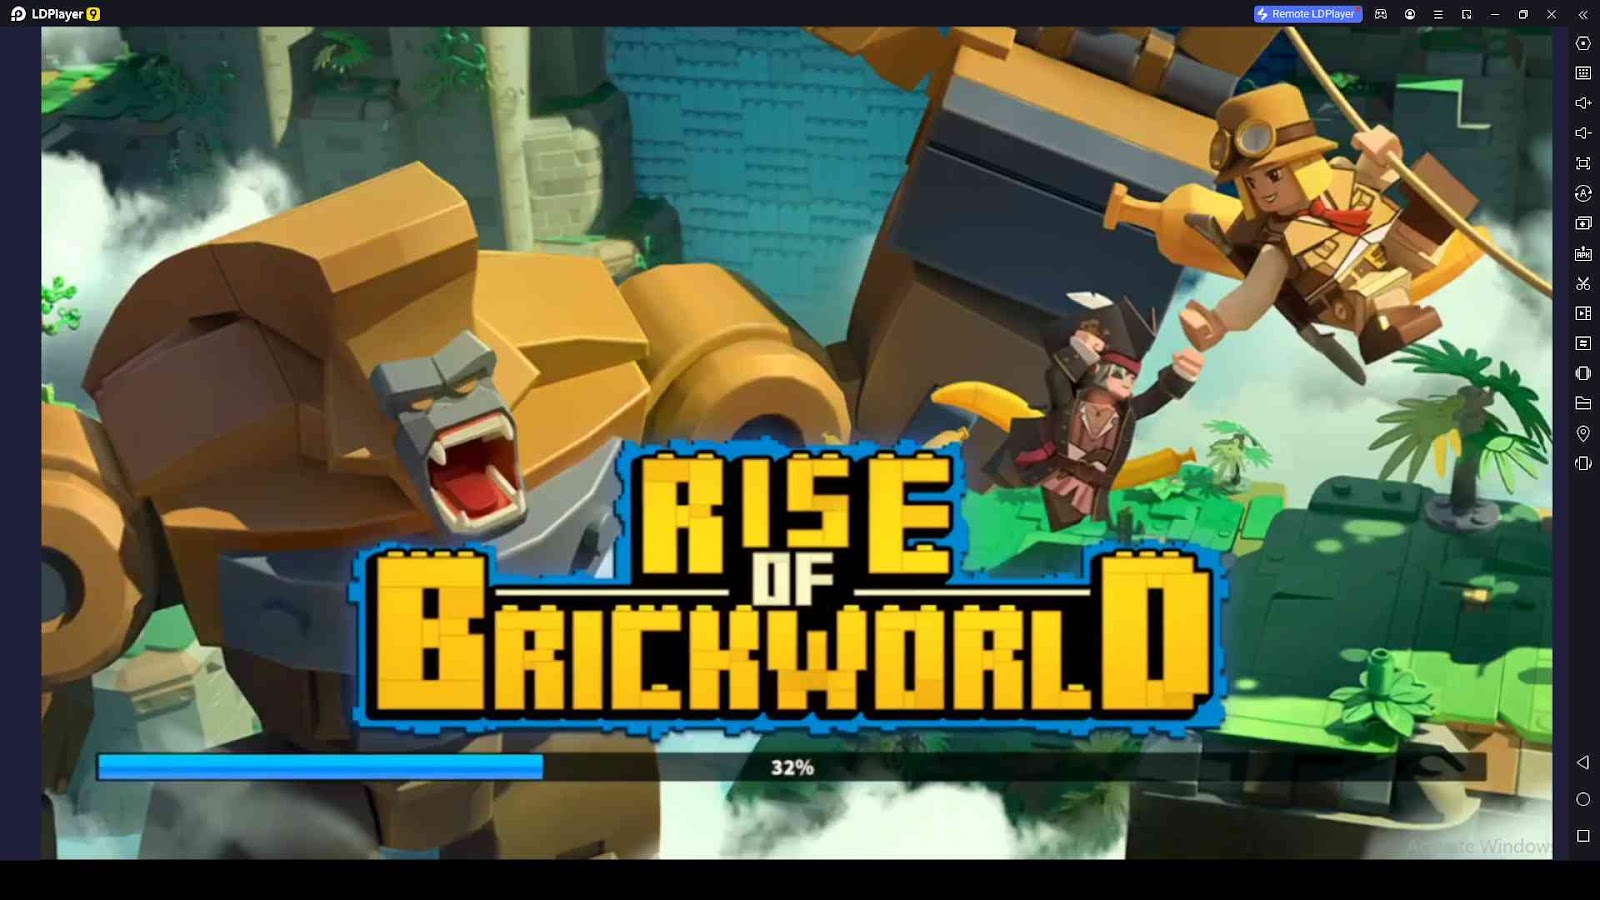 Rise of Brickworld Beginner's Guide